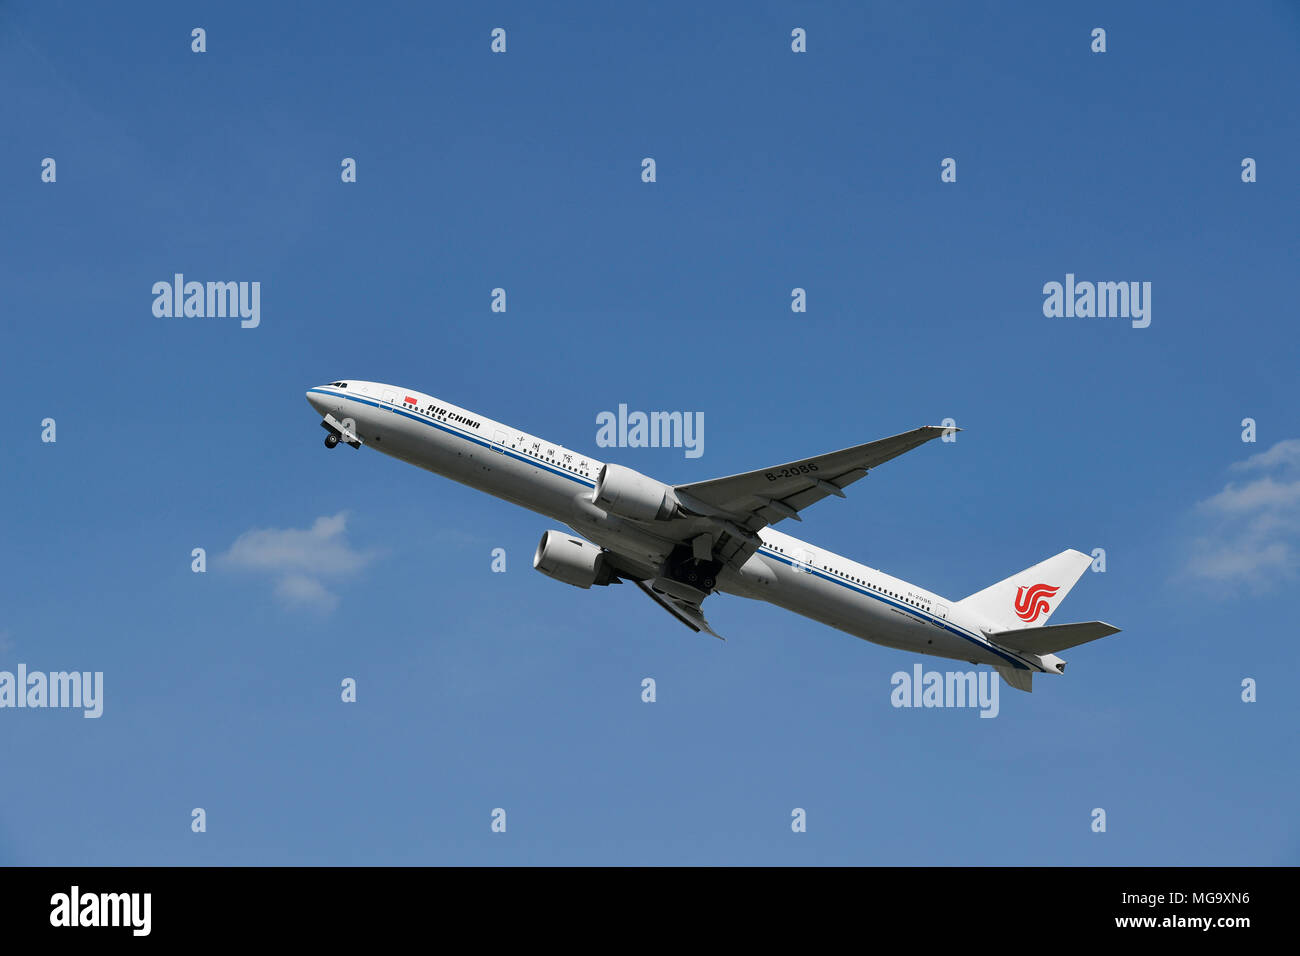 Air China, China Airways, B 777-300er, B777, 300, Aircraft, Airplane, Plane, Airport Munich, MUC, Germany, Stock Photo